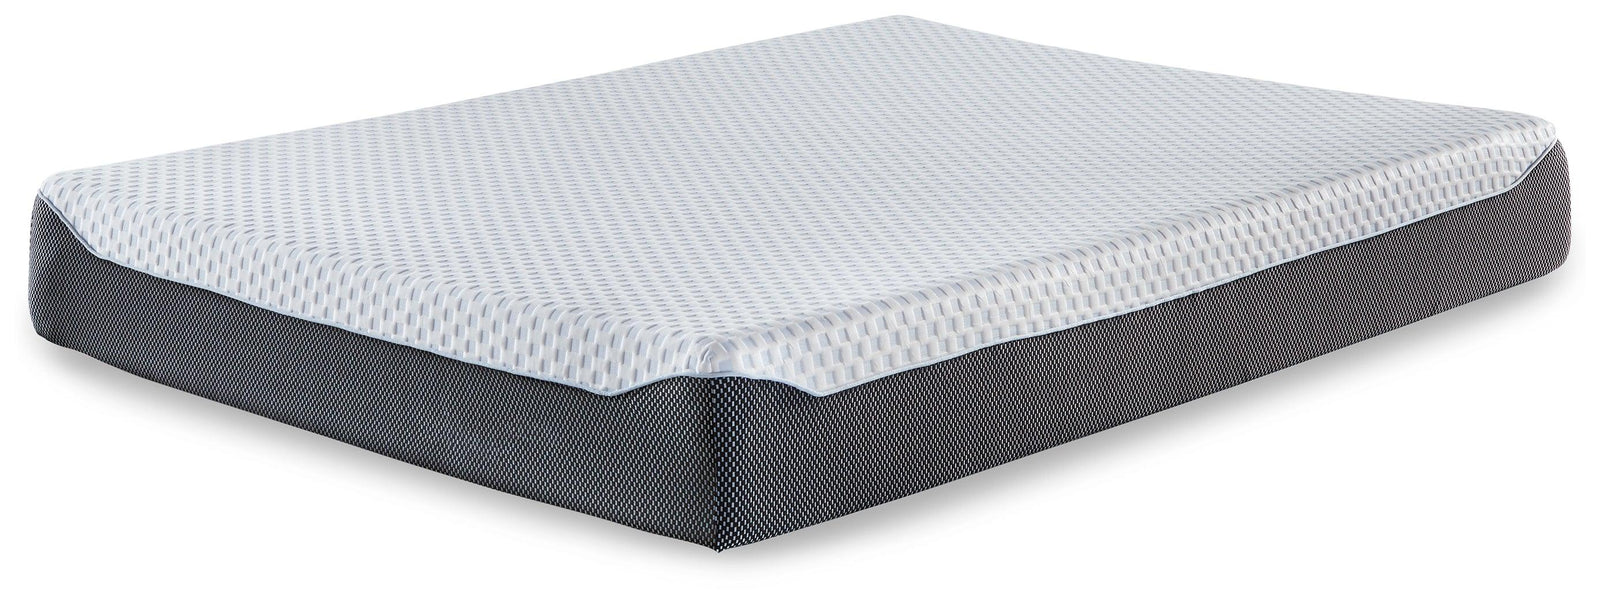 10 Inch Chime Elite White/blue Twin Memory Foam Mattress In A Box - Ella Furniture